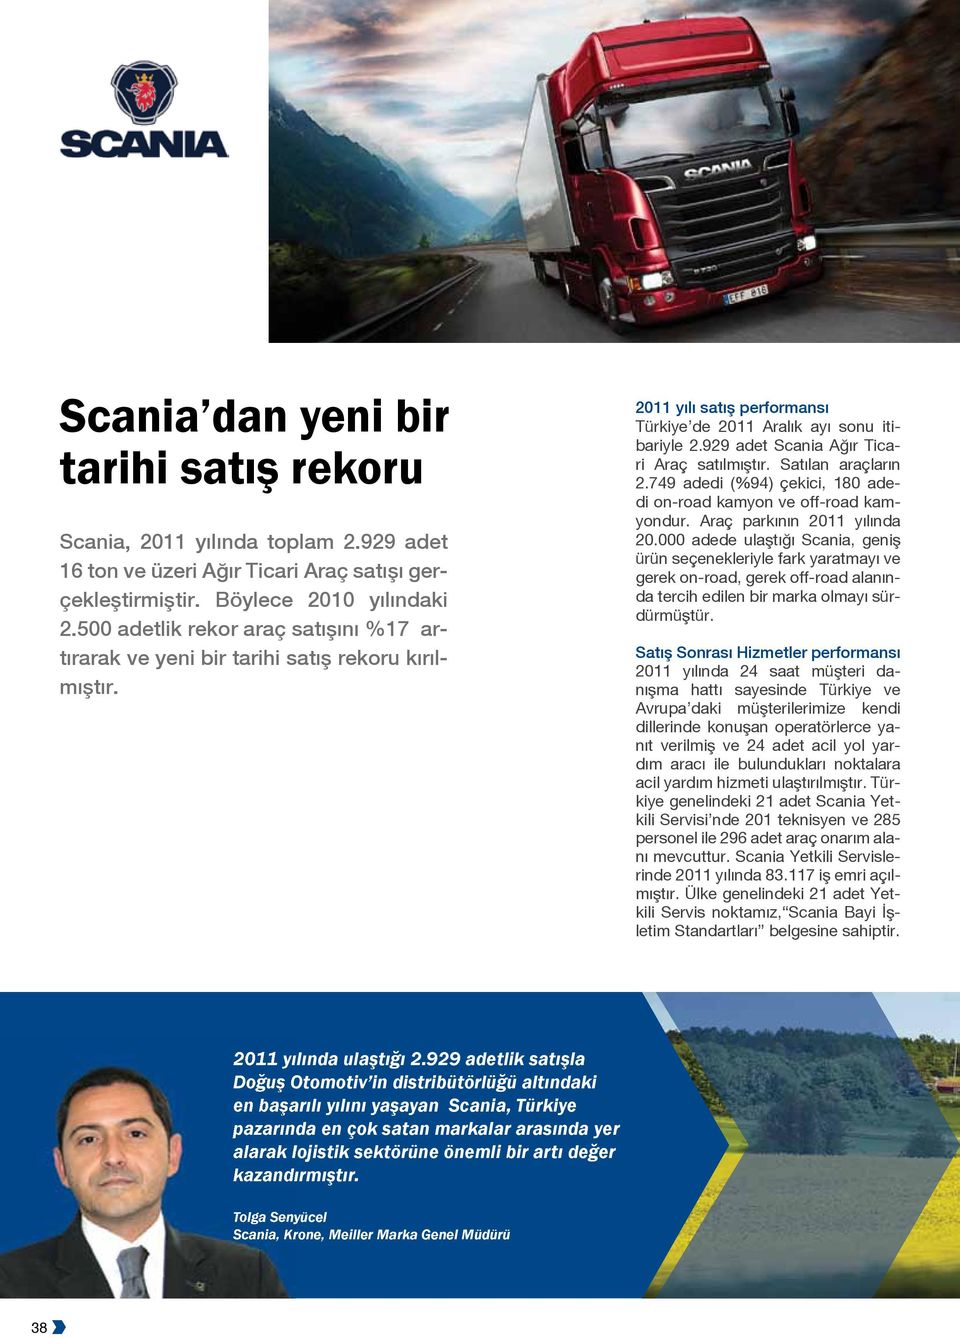 929 adet Scania Ağır Ticari Araç satılmıştır. Satılan araçların 2.749 adedi (%94) çekici, 180 adedi on-road kamyon ve off-road kamyondur. Araç parkının 2011 yılında 20.